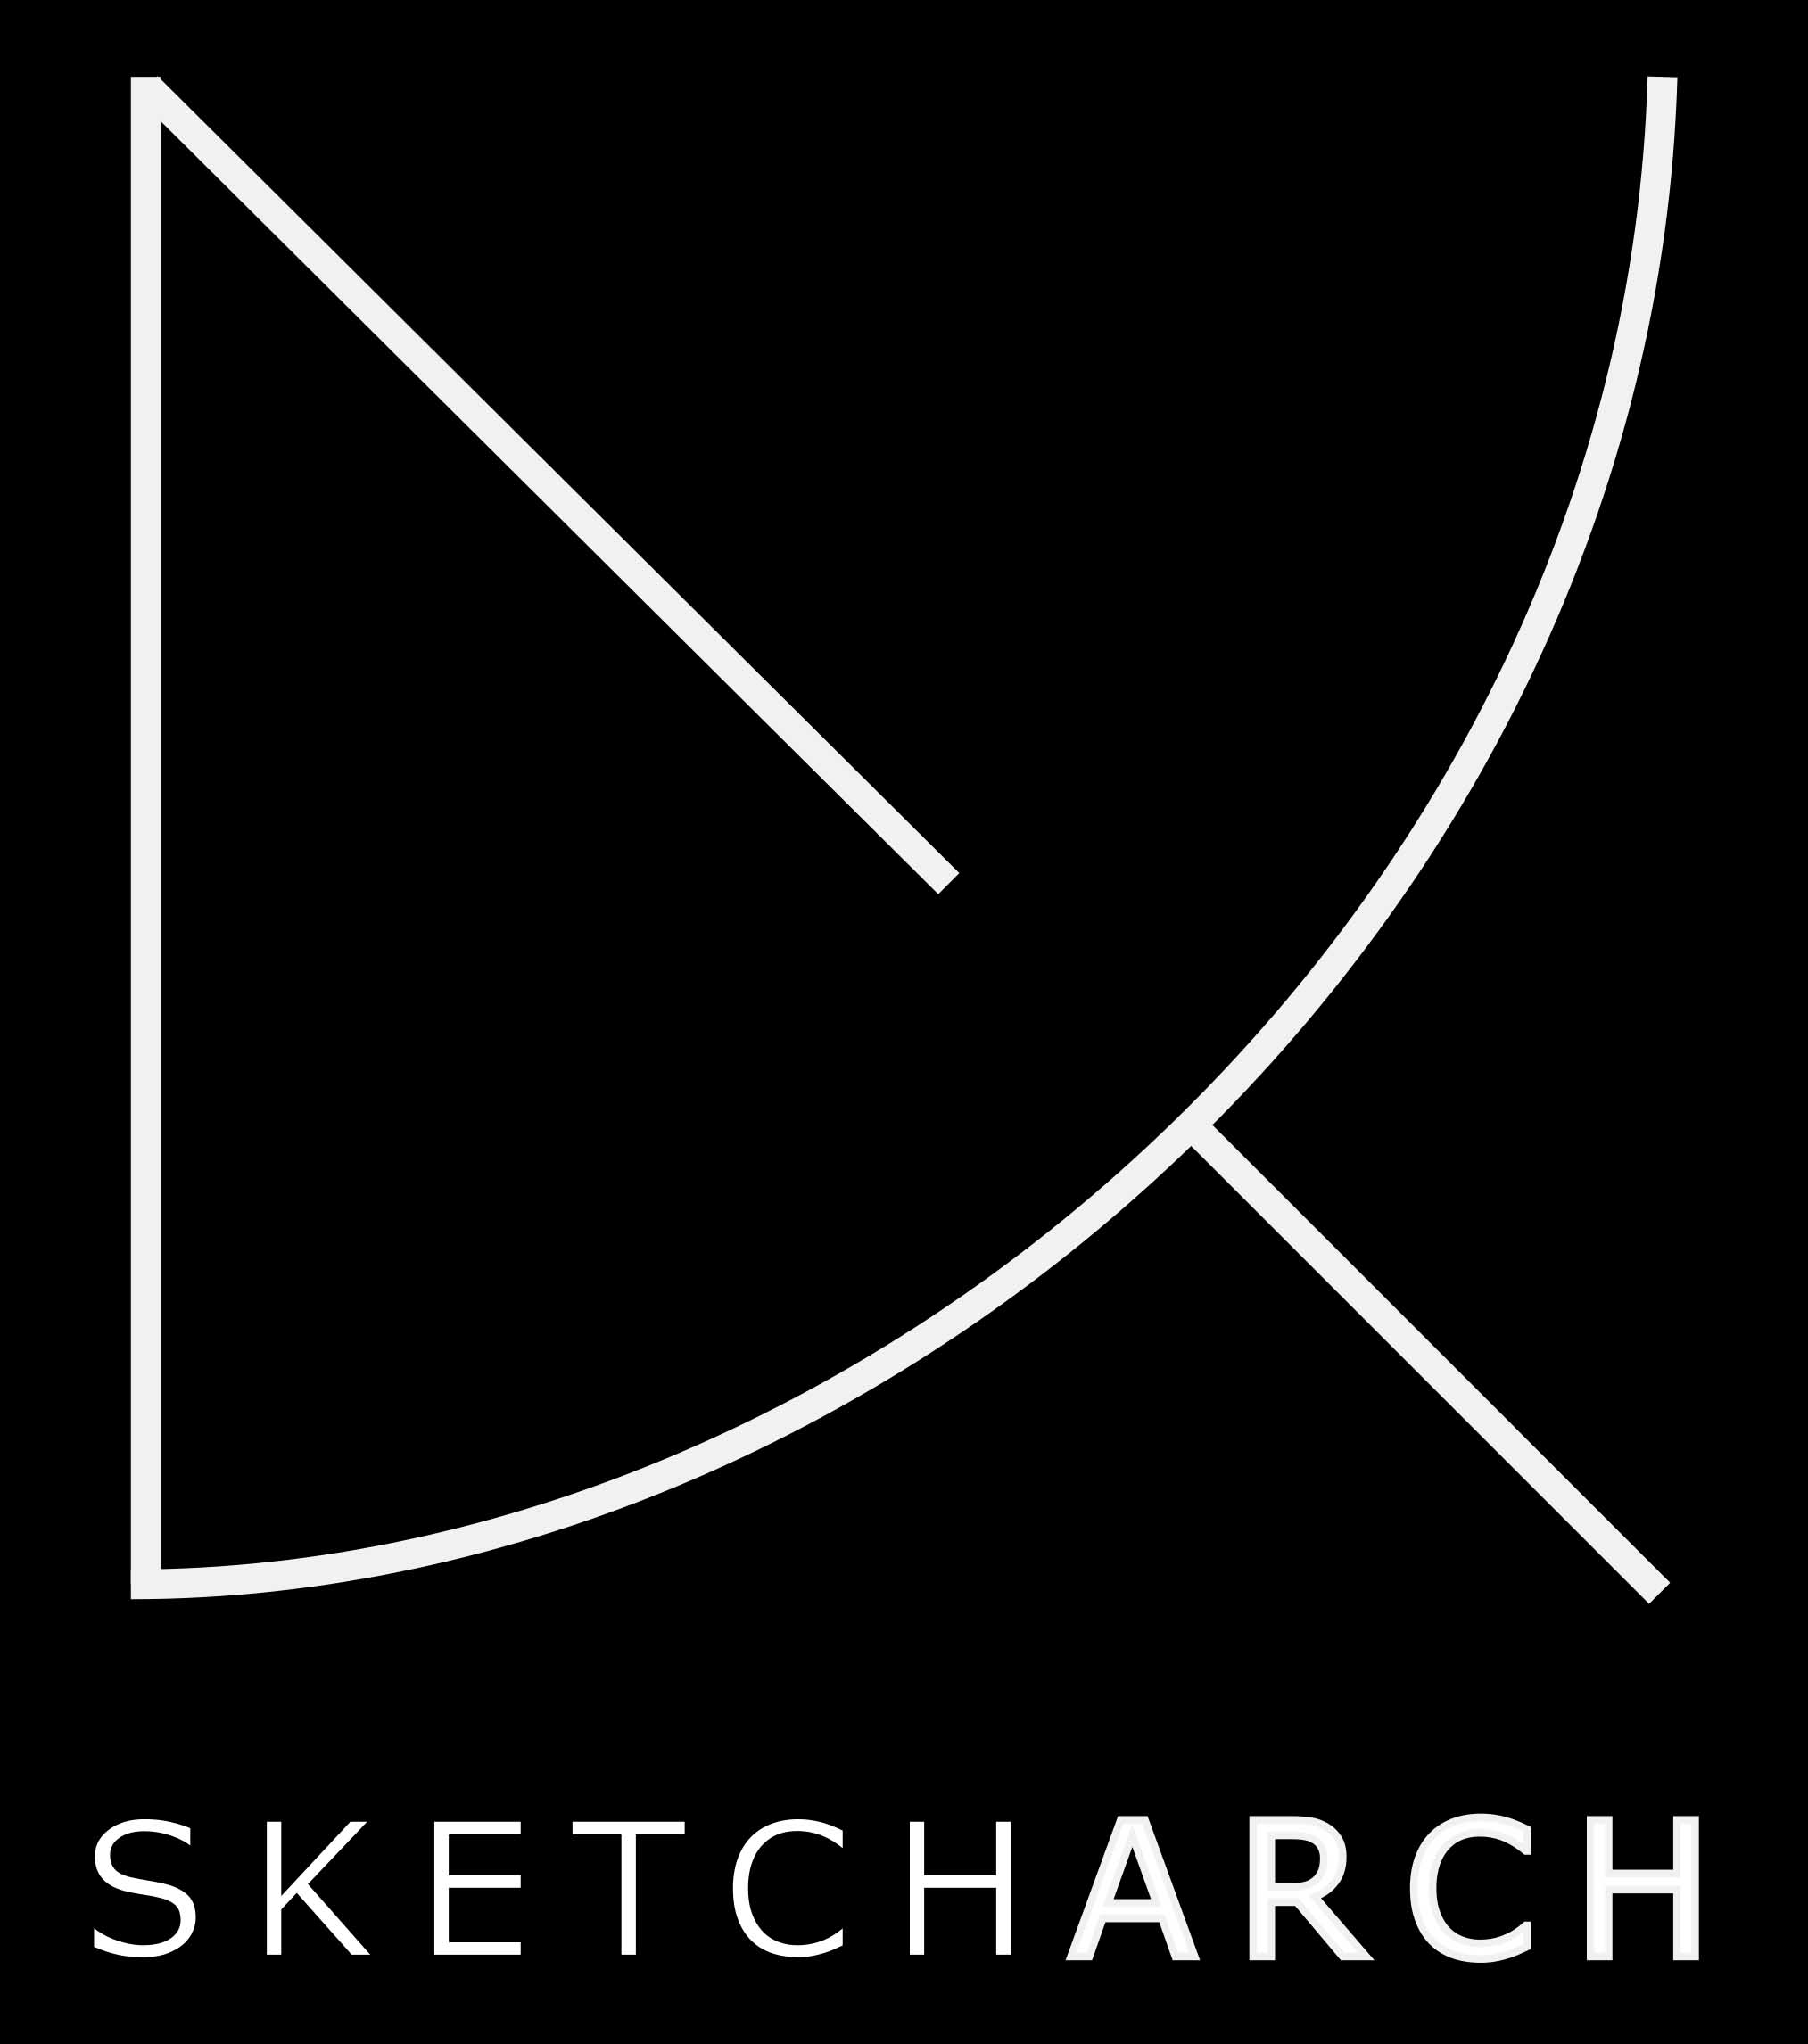 sketch-arch_logo1.jpg